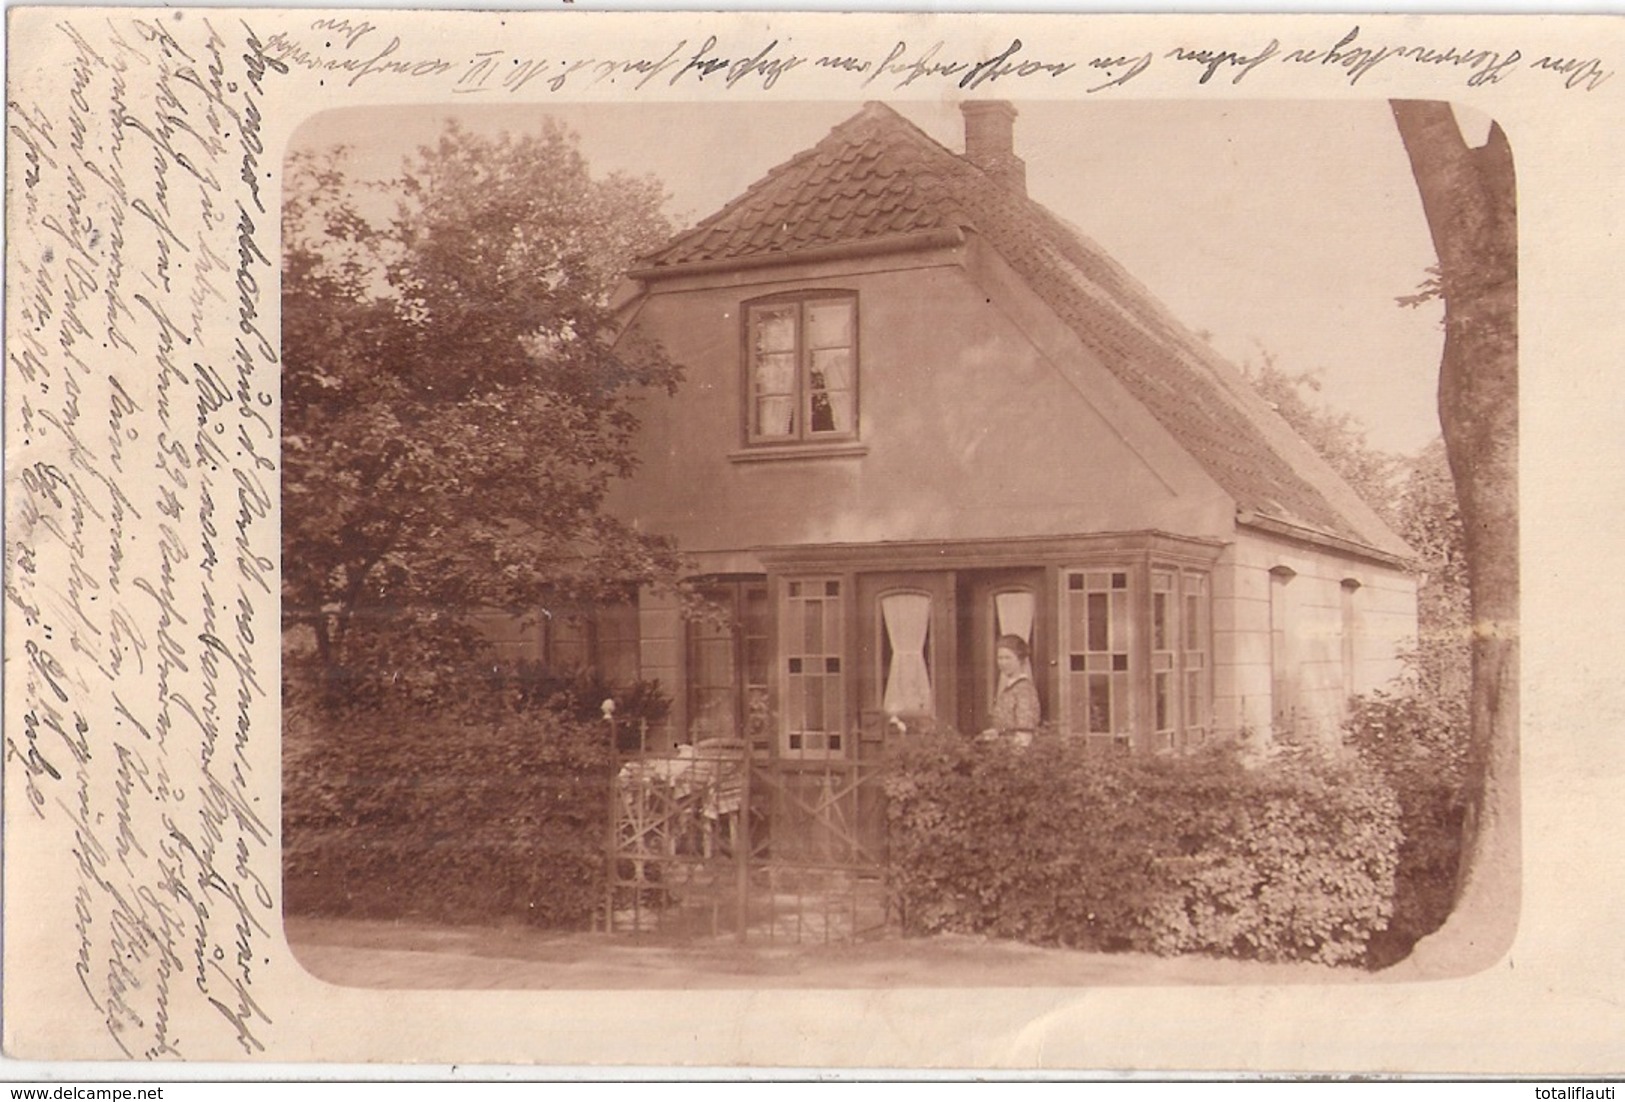 GLÜCKSTADT Belebtes Idyllisches Einzelhaus Von Familie Schulze Gelaufe 30.7.1917 Original Private Fotokarte Unikat - Glueckstadt